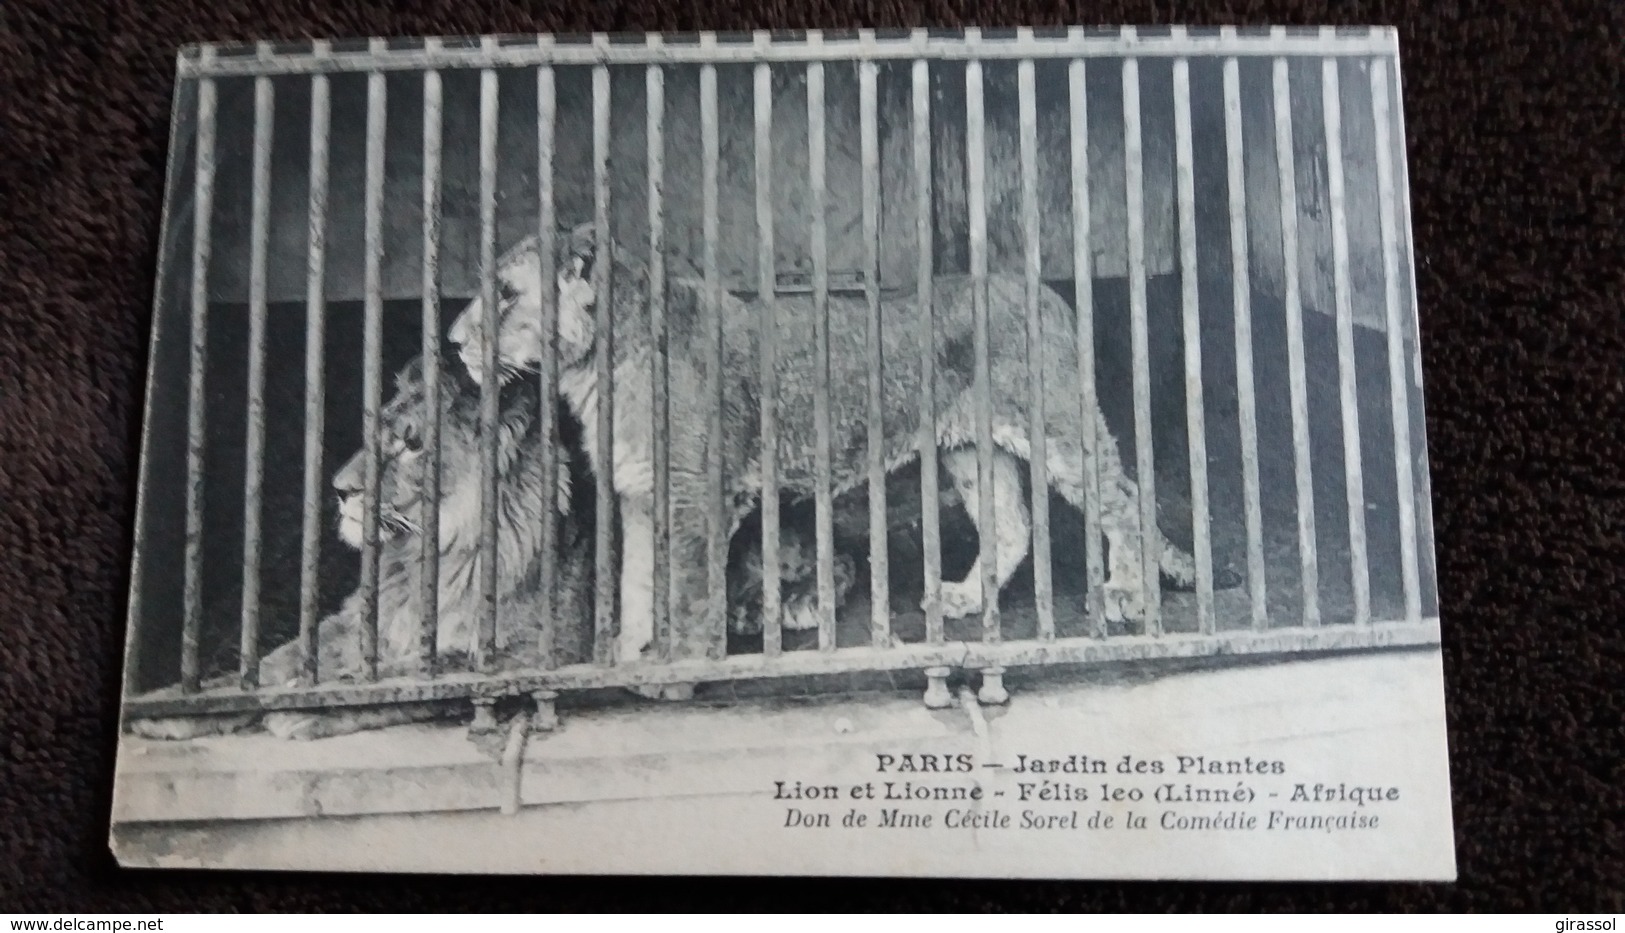 CPA PARIS JARDIN DES PLANTES LION ET LIONNE FELIS LEO LINNE AFRIQUE DON DE MME CECILE SOREL  UN MANQUE COIN - Lions